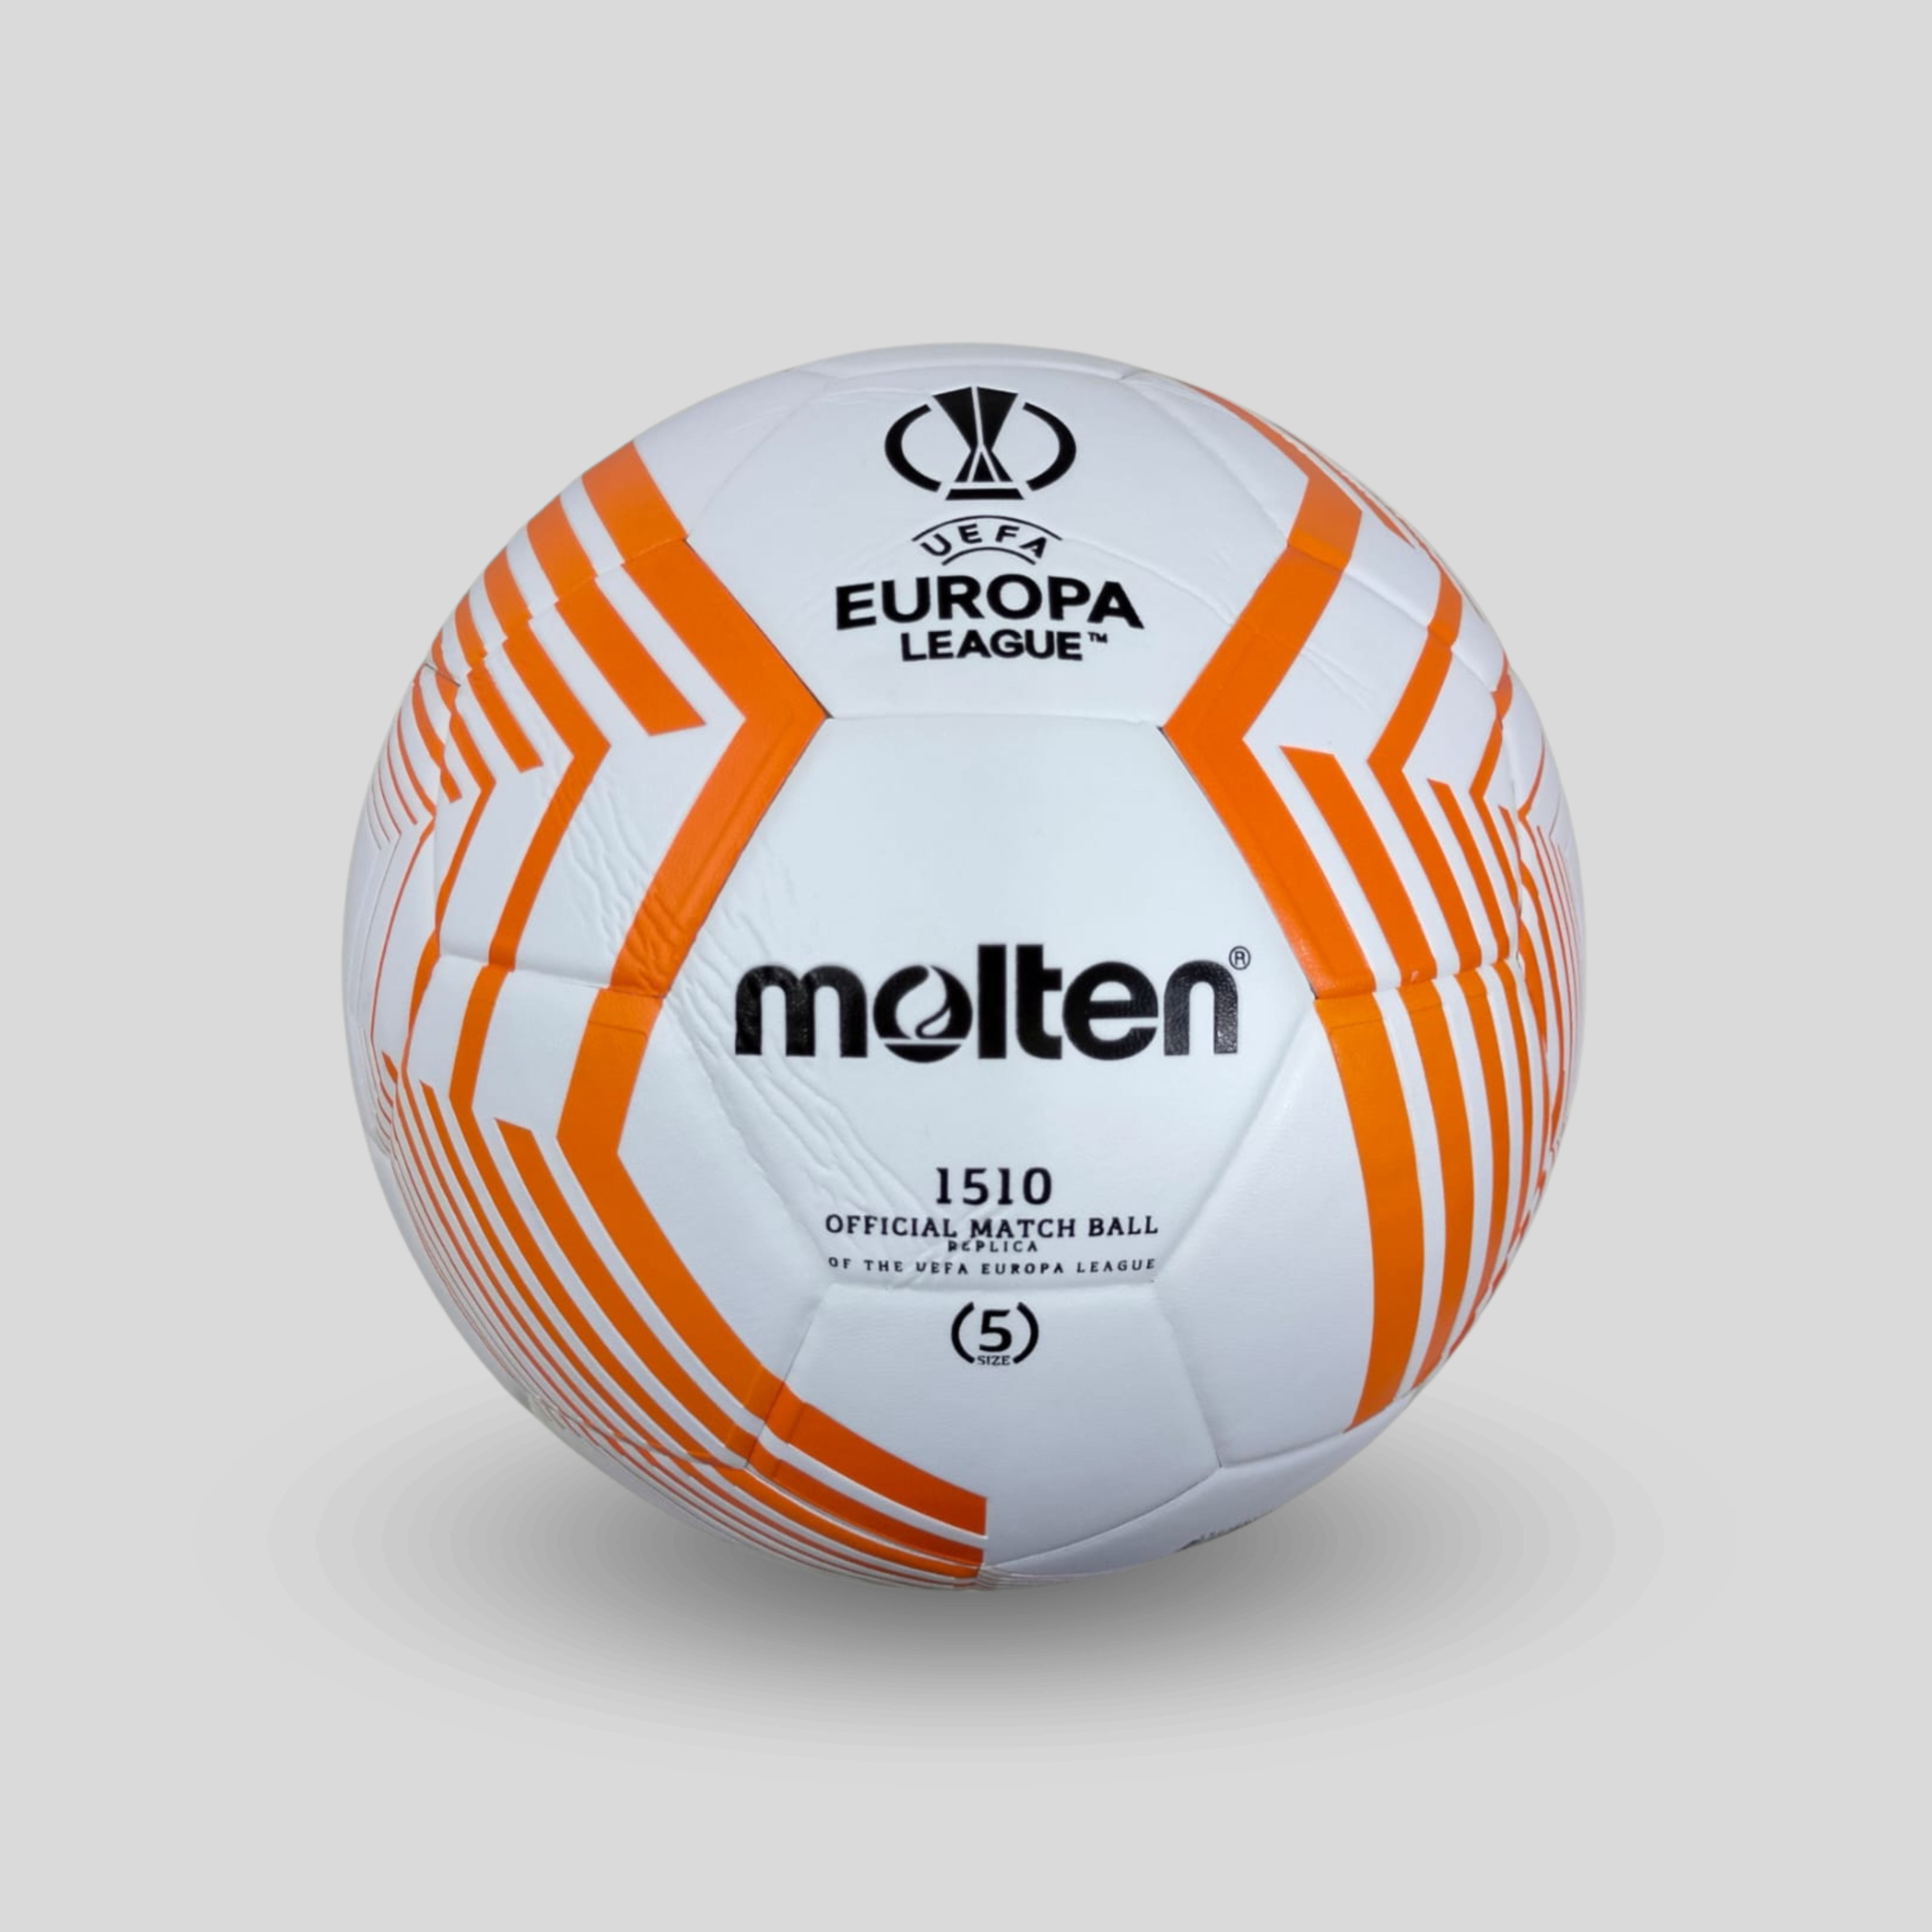 Balon de Fútbol Molten 1510